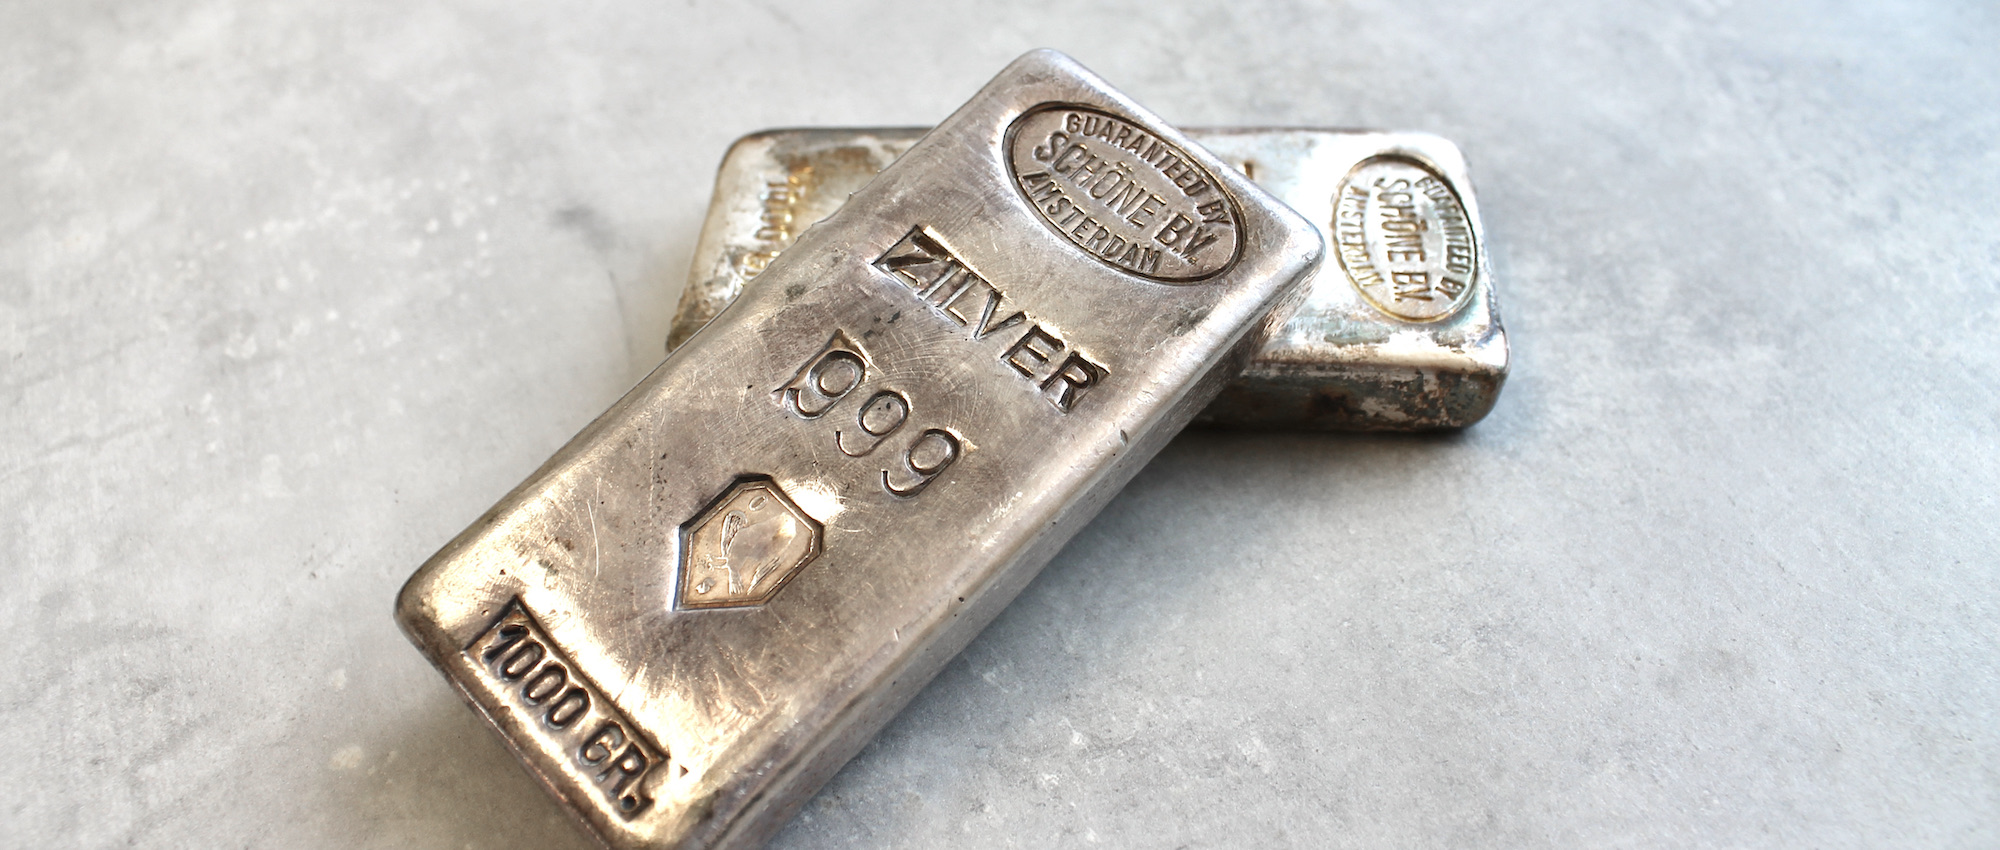 George Bernard blok Herenhuis Zilverbaren verkopen - Verkoop uw zilverbaren tegen de zilverkoers